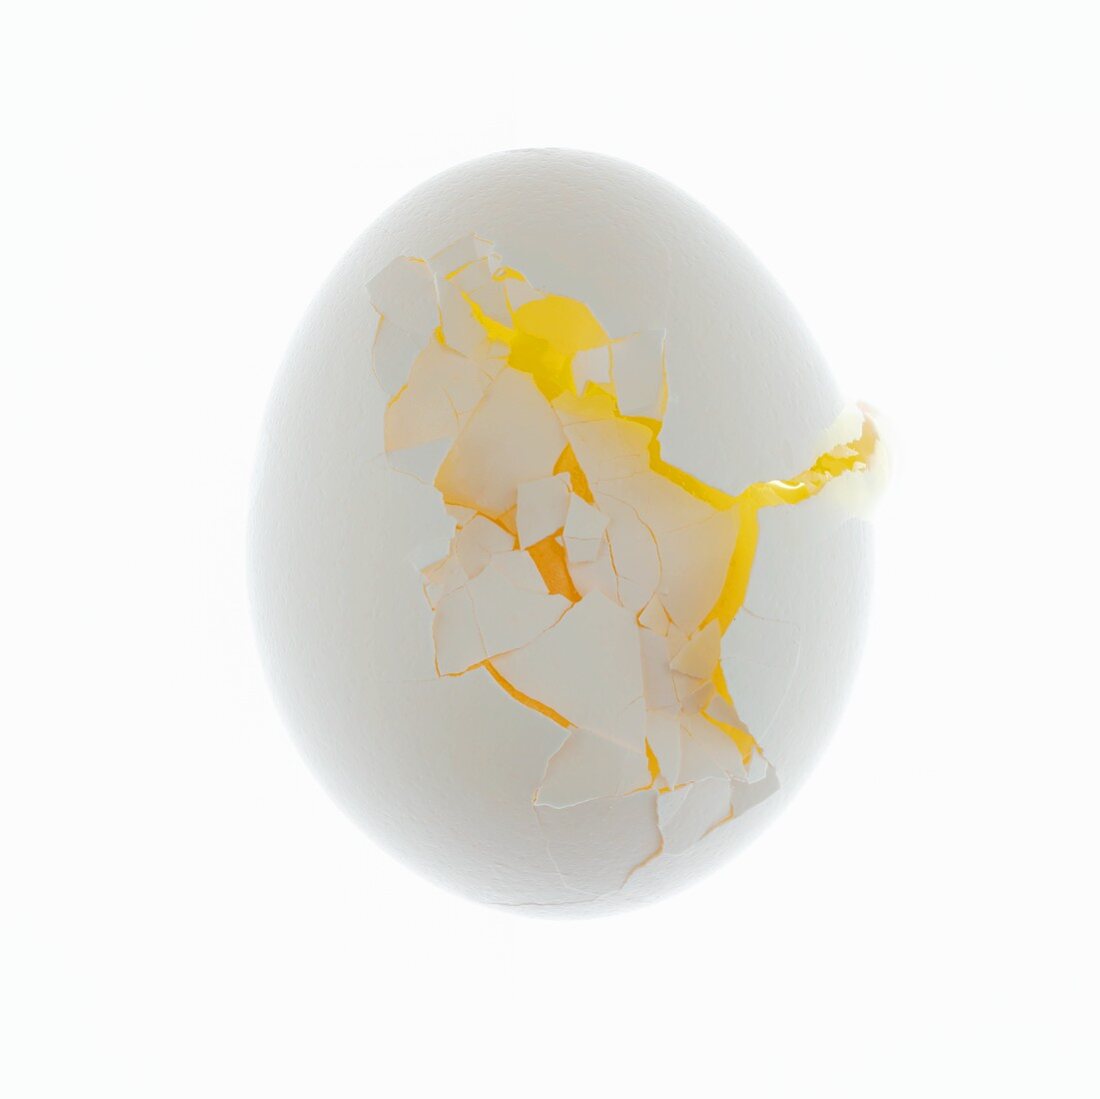 Rohes Ei mit zerbrochener Schale